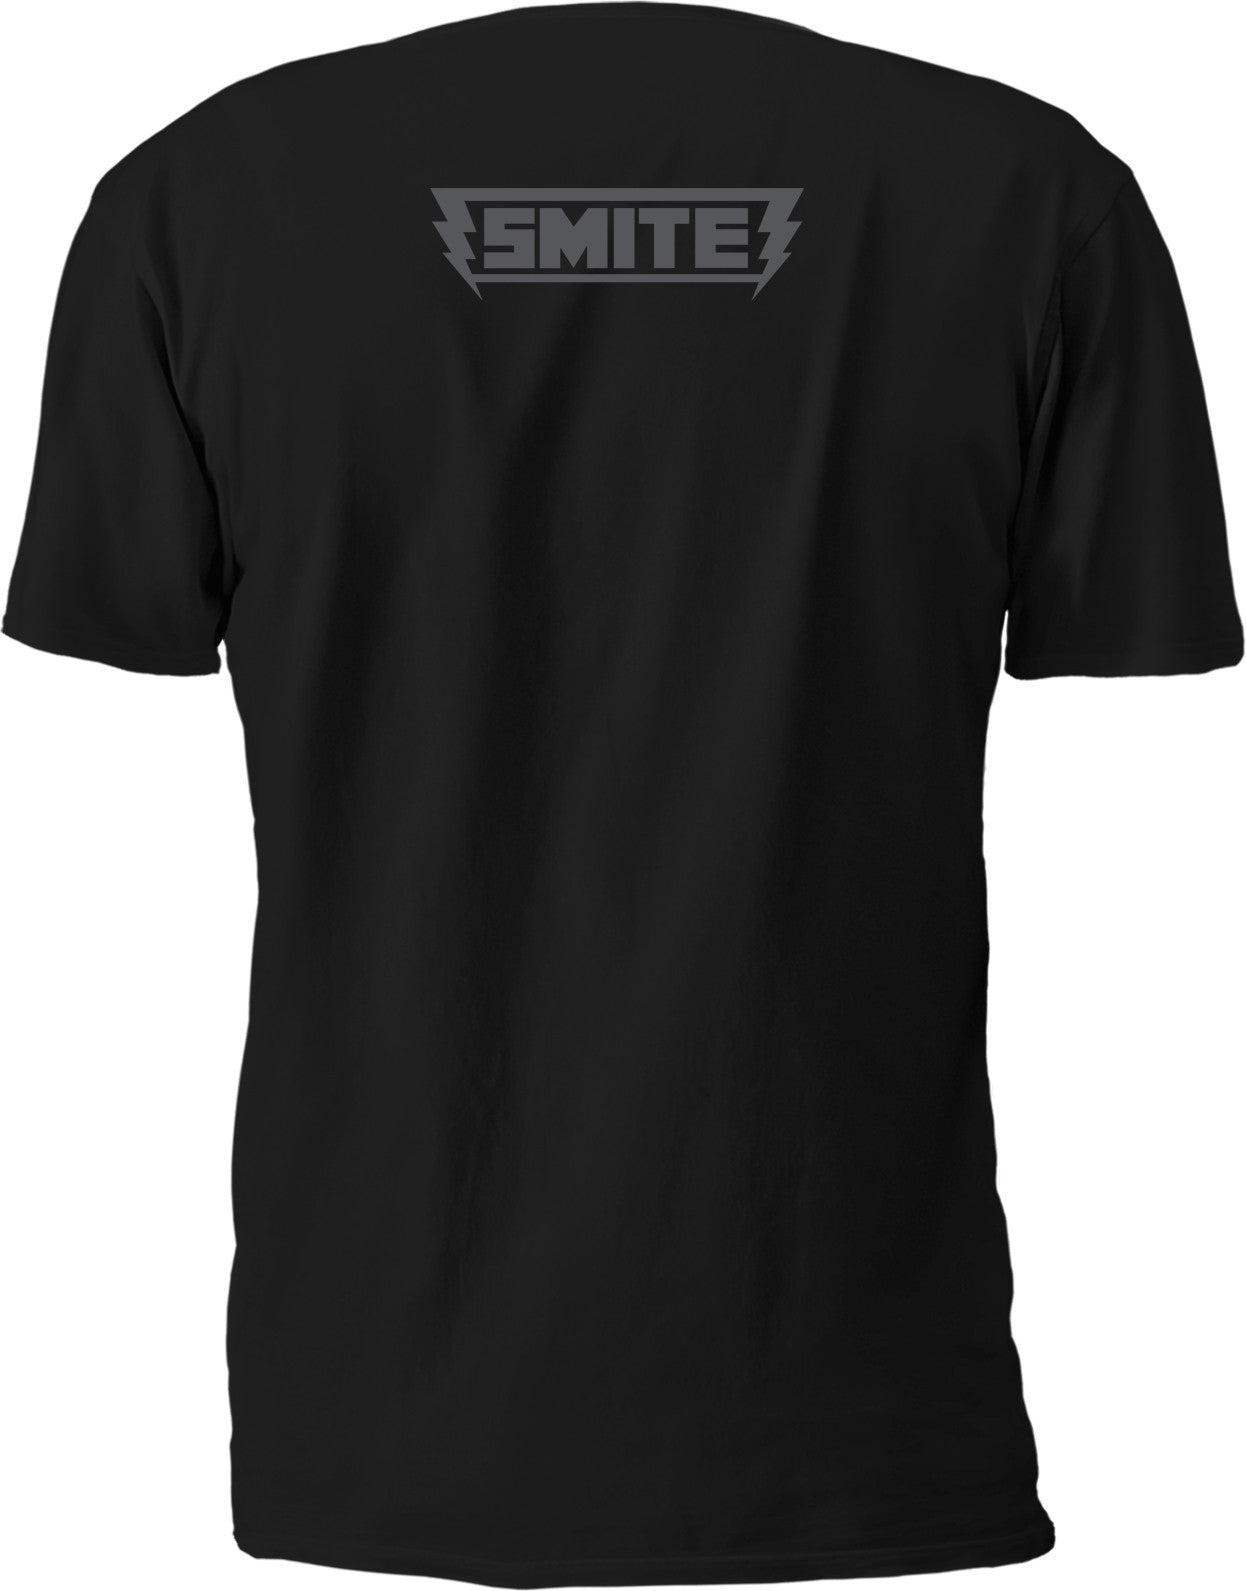 Smite Gods: Ao Kuang T-shirt